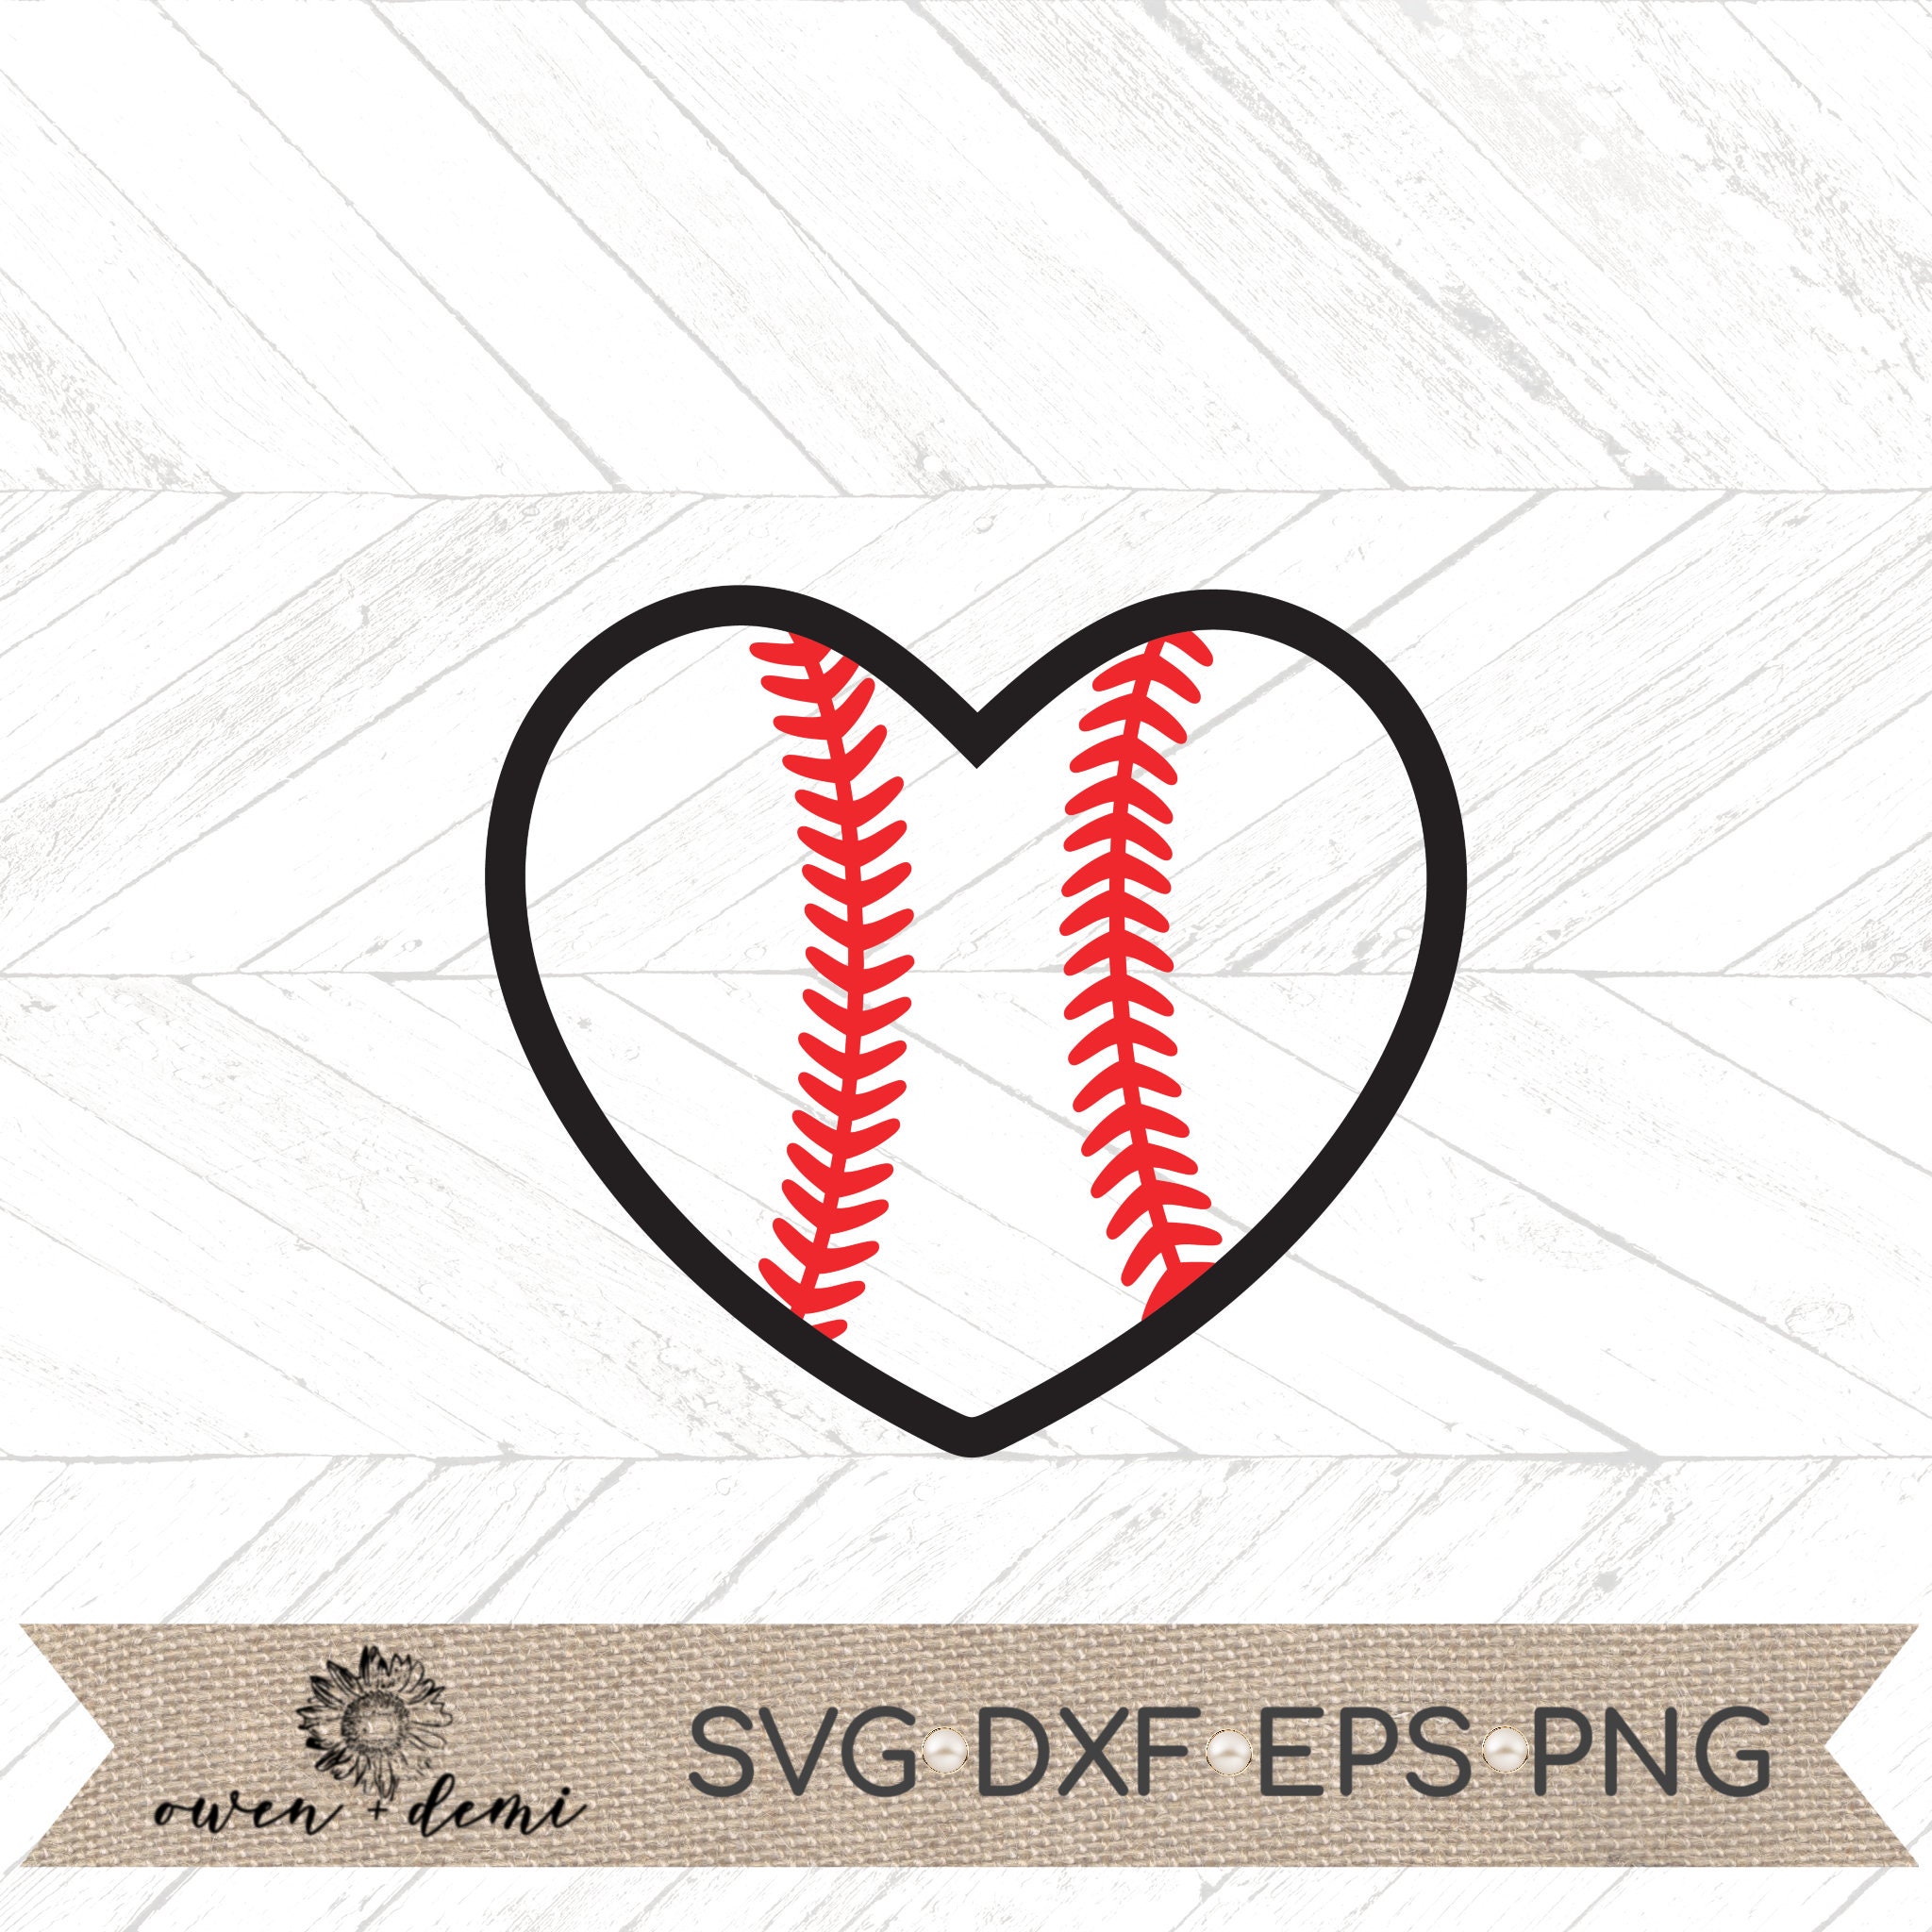 Baseball heart svg baseball heart cut file baseball Cricut | Etsy